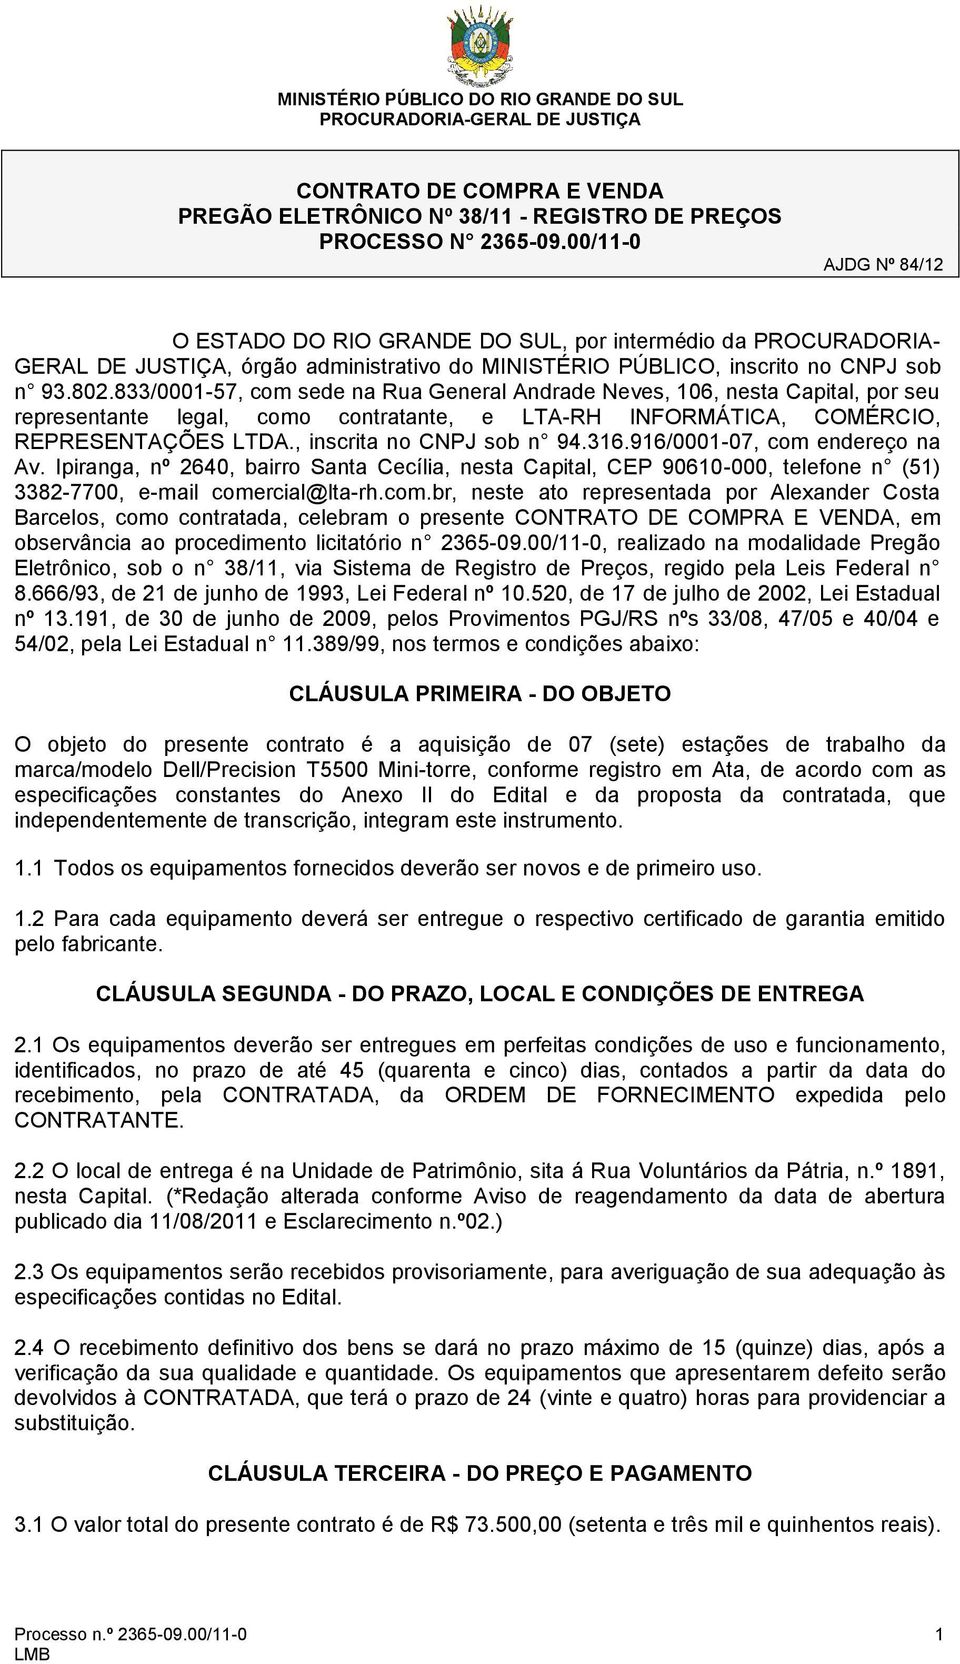 833/0001-57, com sede na Rua General Andrade Neves, 106, nesta Capital, por seu representante legal, como contratante, e LTA-RH INFORMÁTICA, COMÉRCIO, REPRESENTAÇÕES LTDA., inscrita no CNPJ sob n 94.